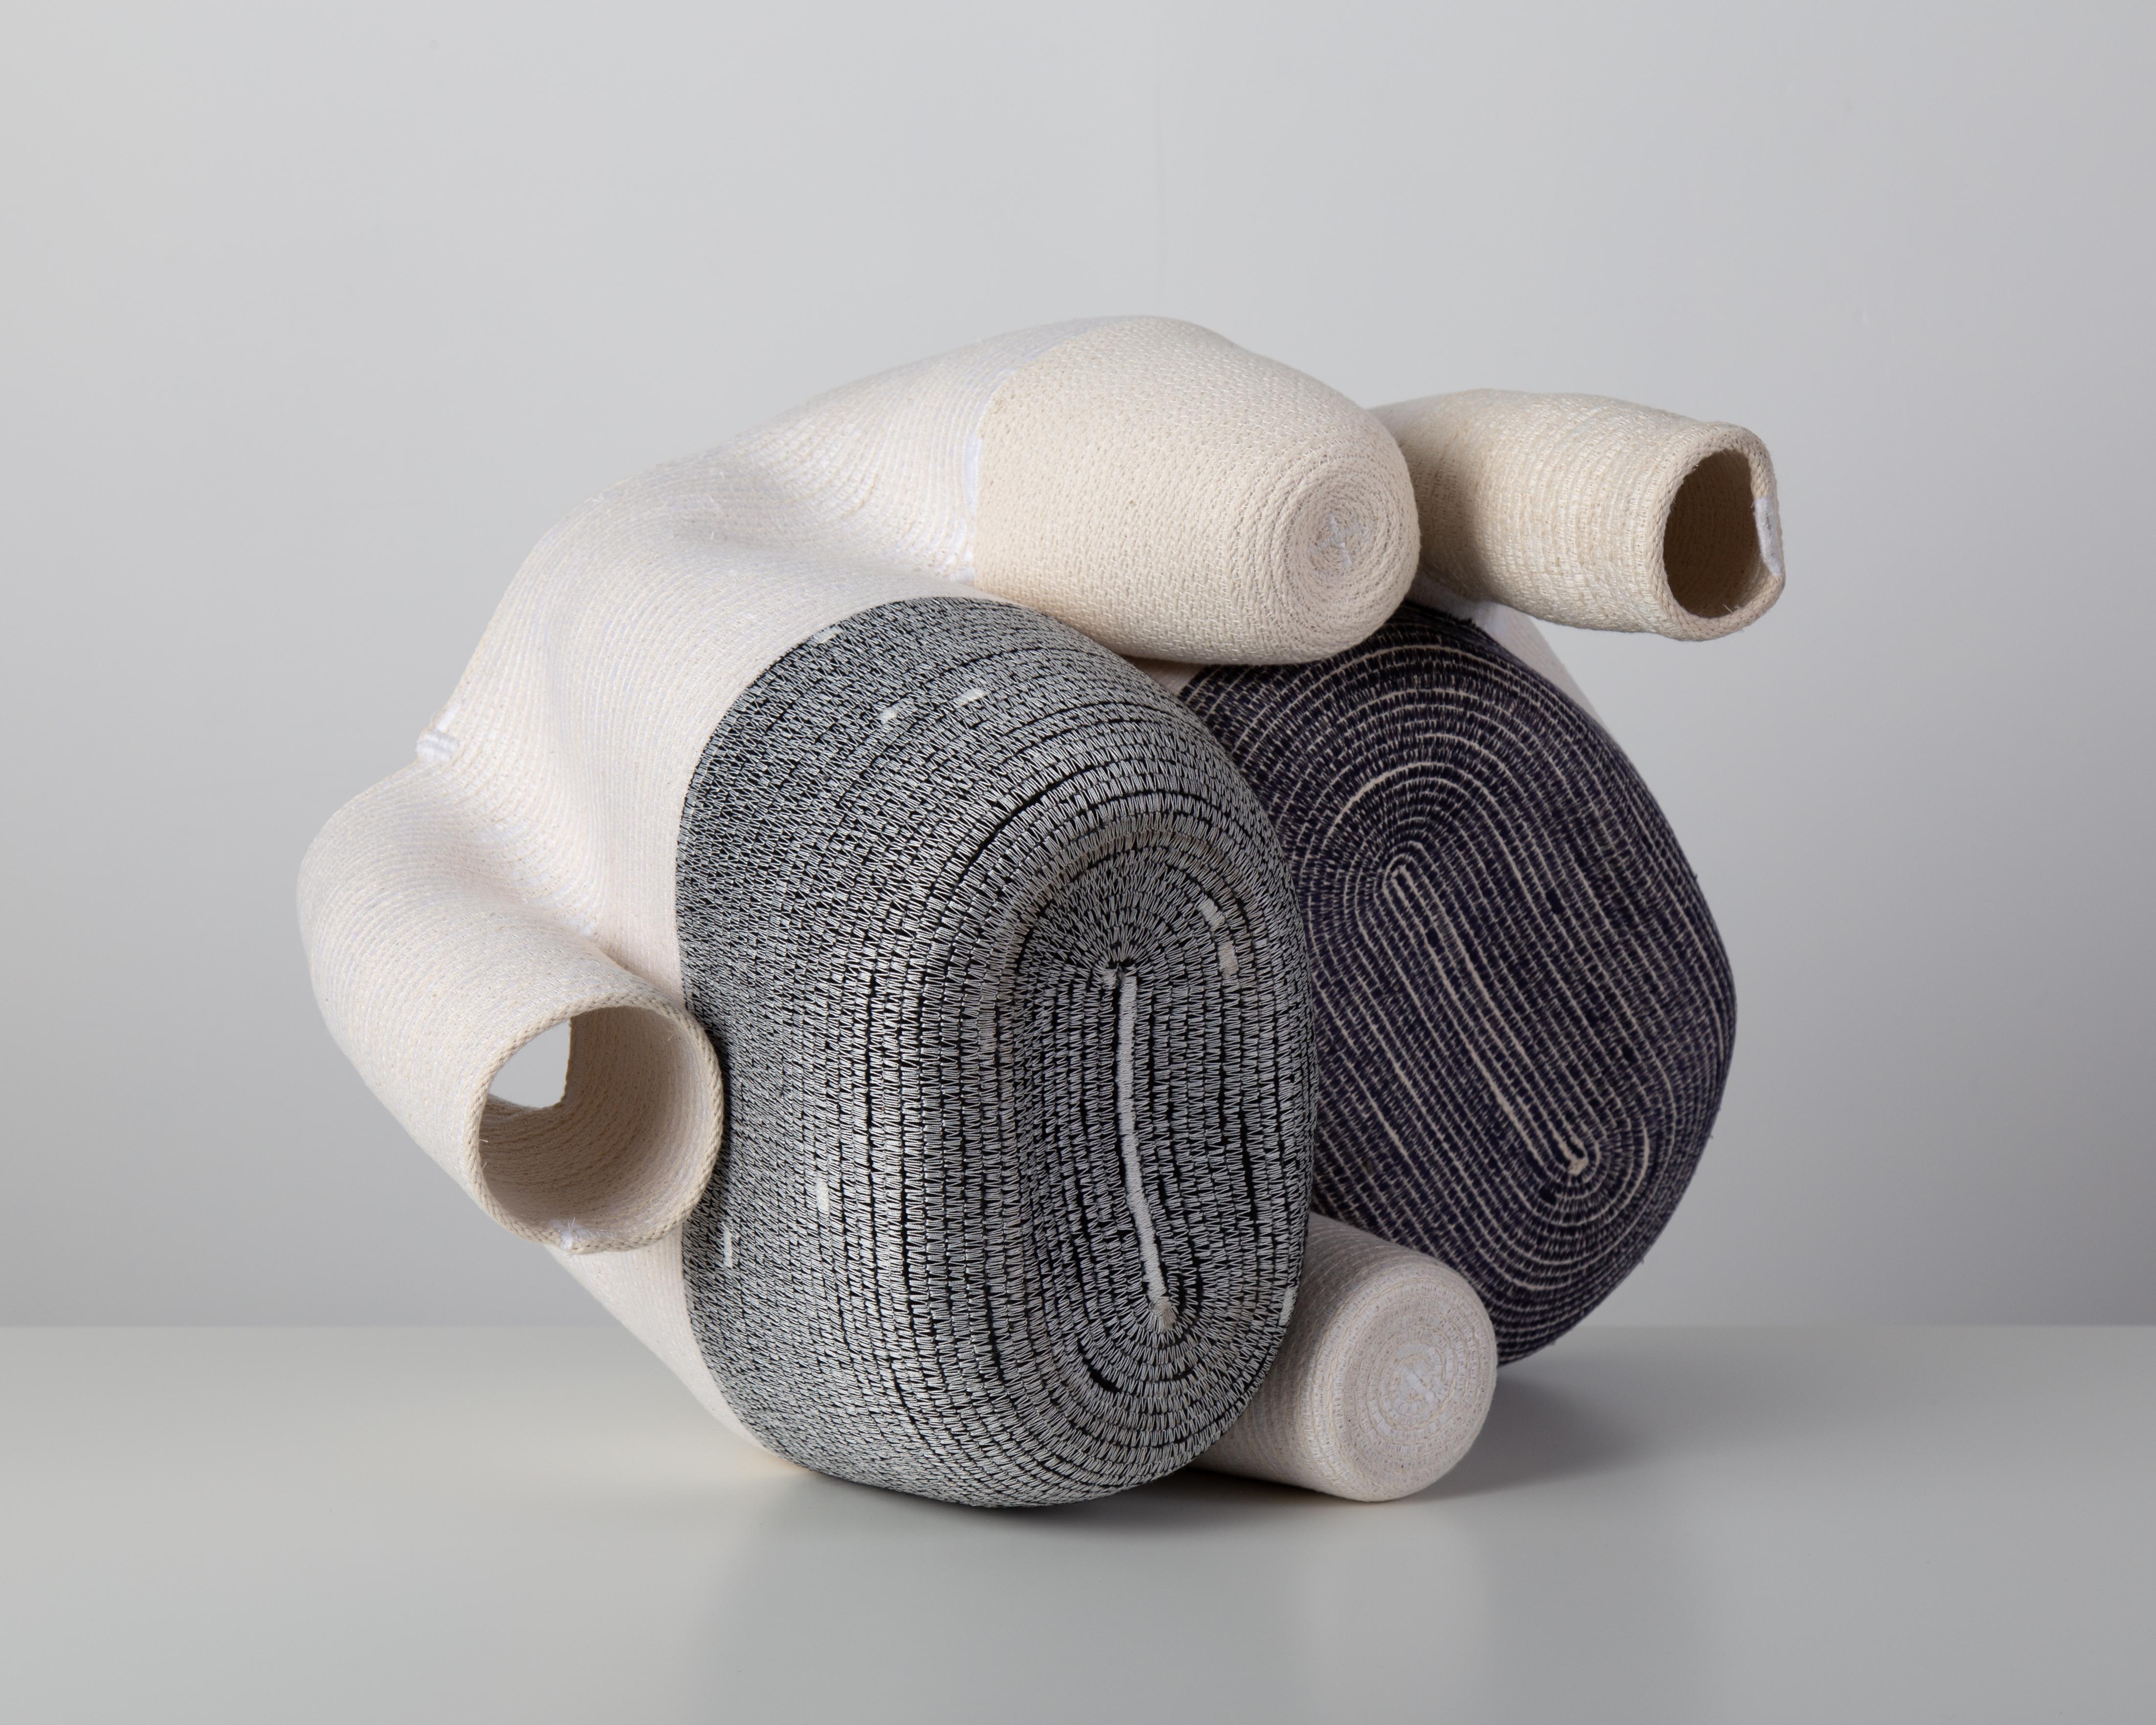 « Vase sans titre de 15 cm » Sculpture en fibre de coton enroulée et cousue de Doug Johnston 5